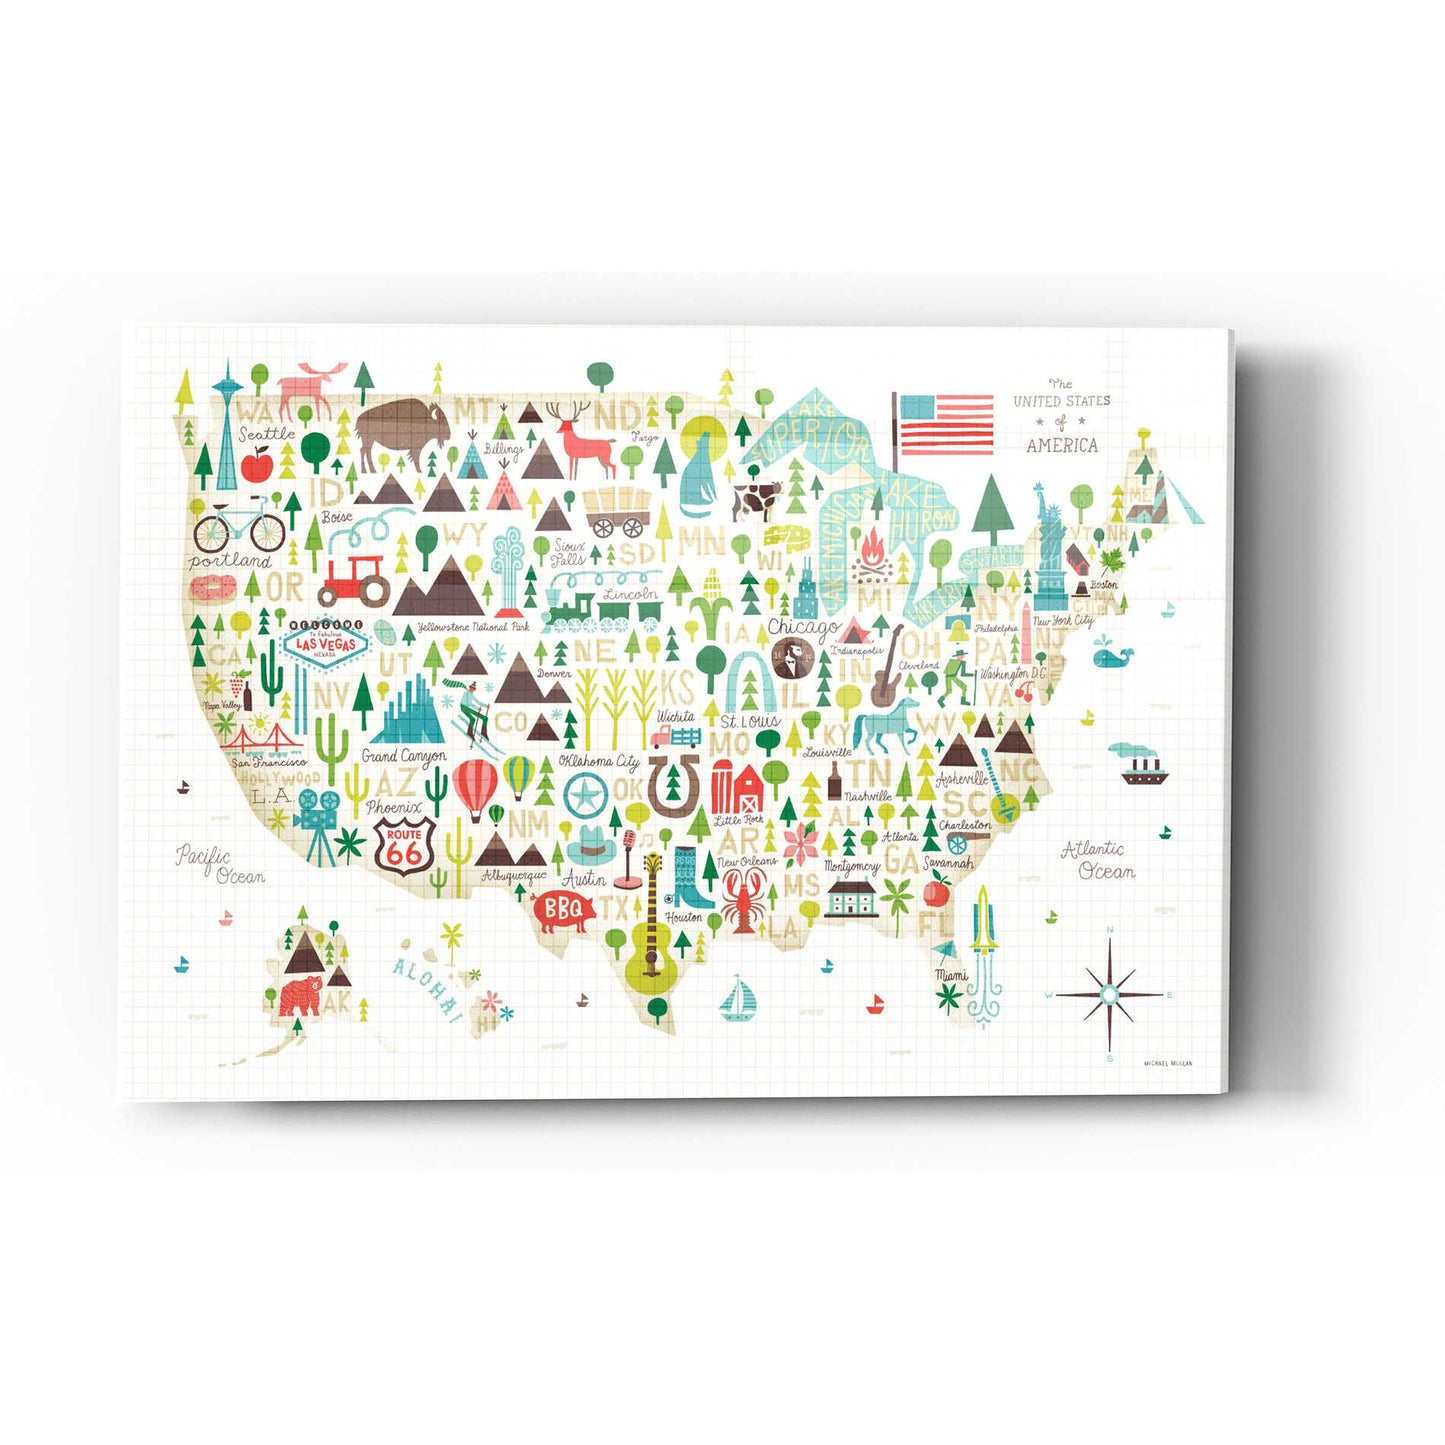 Epic Art 'Illustrated USA' by Michael Mullan, Acrylic Glass Wall Art,16x24